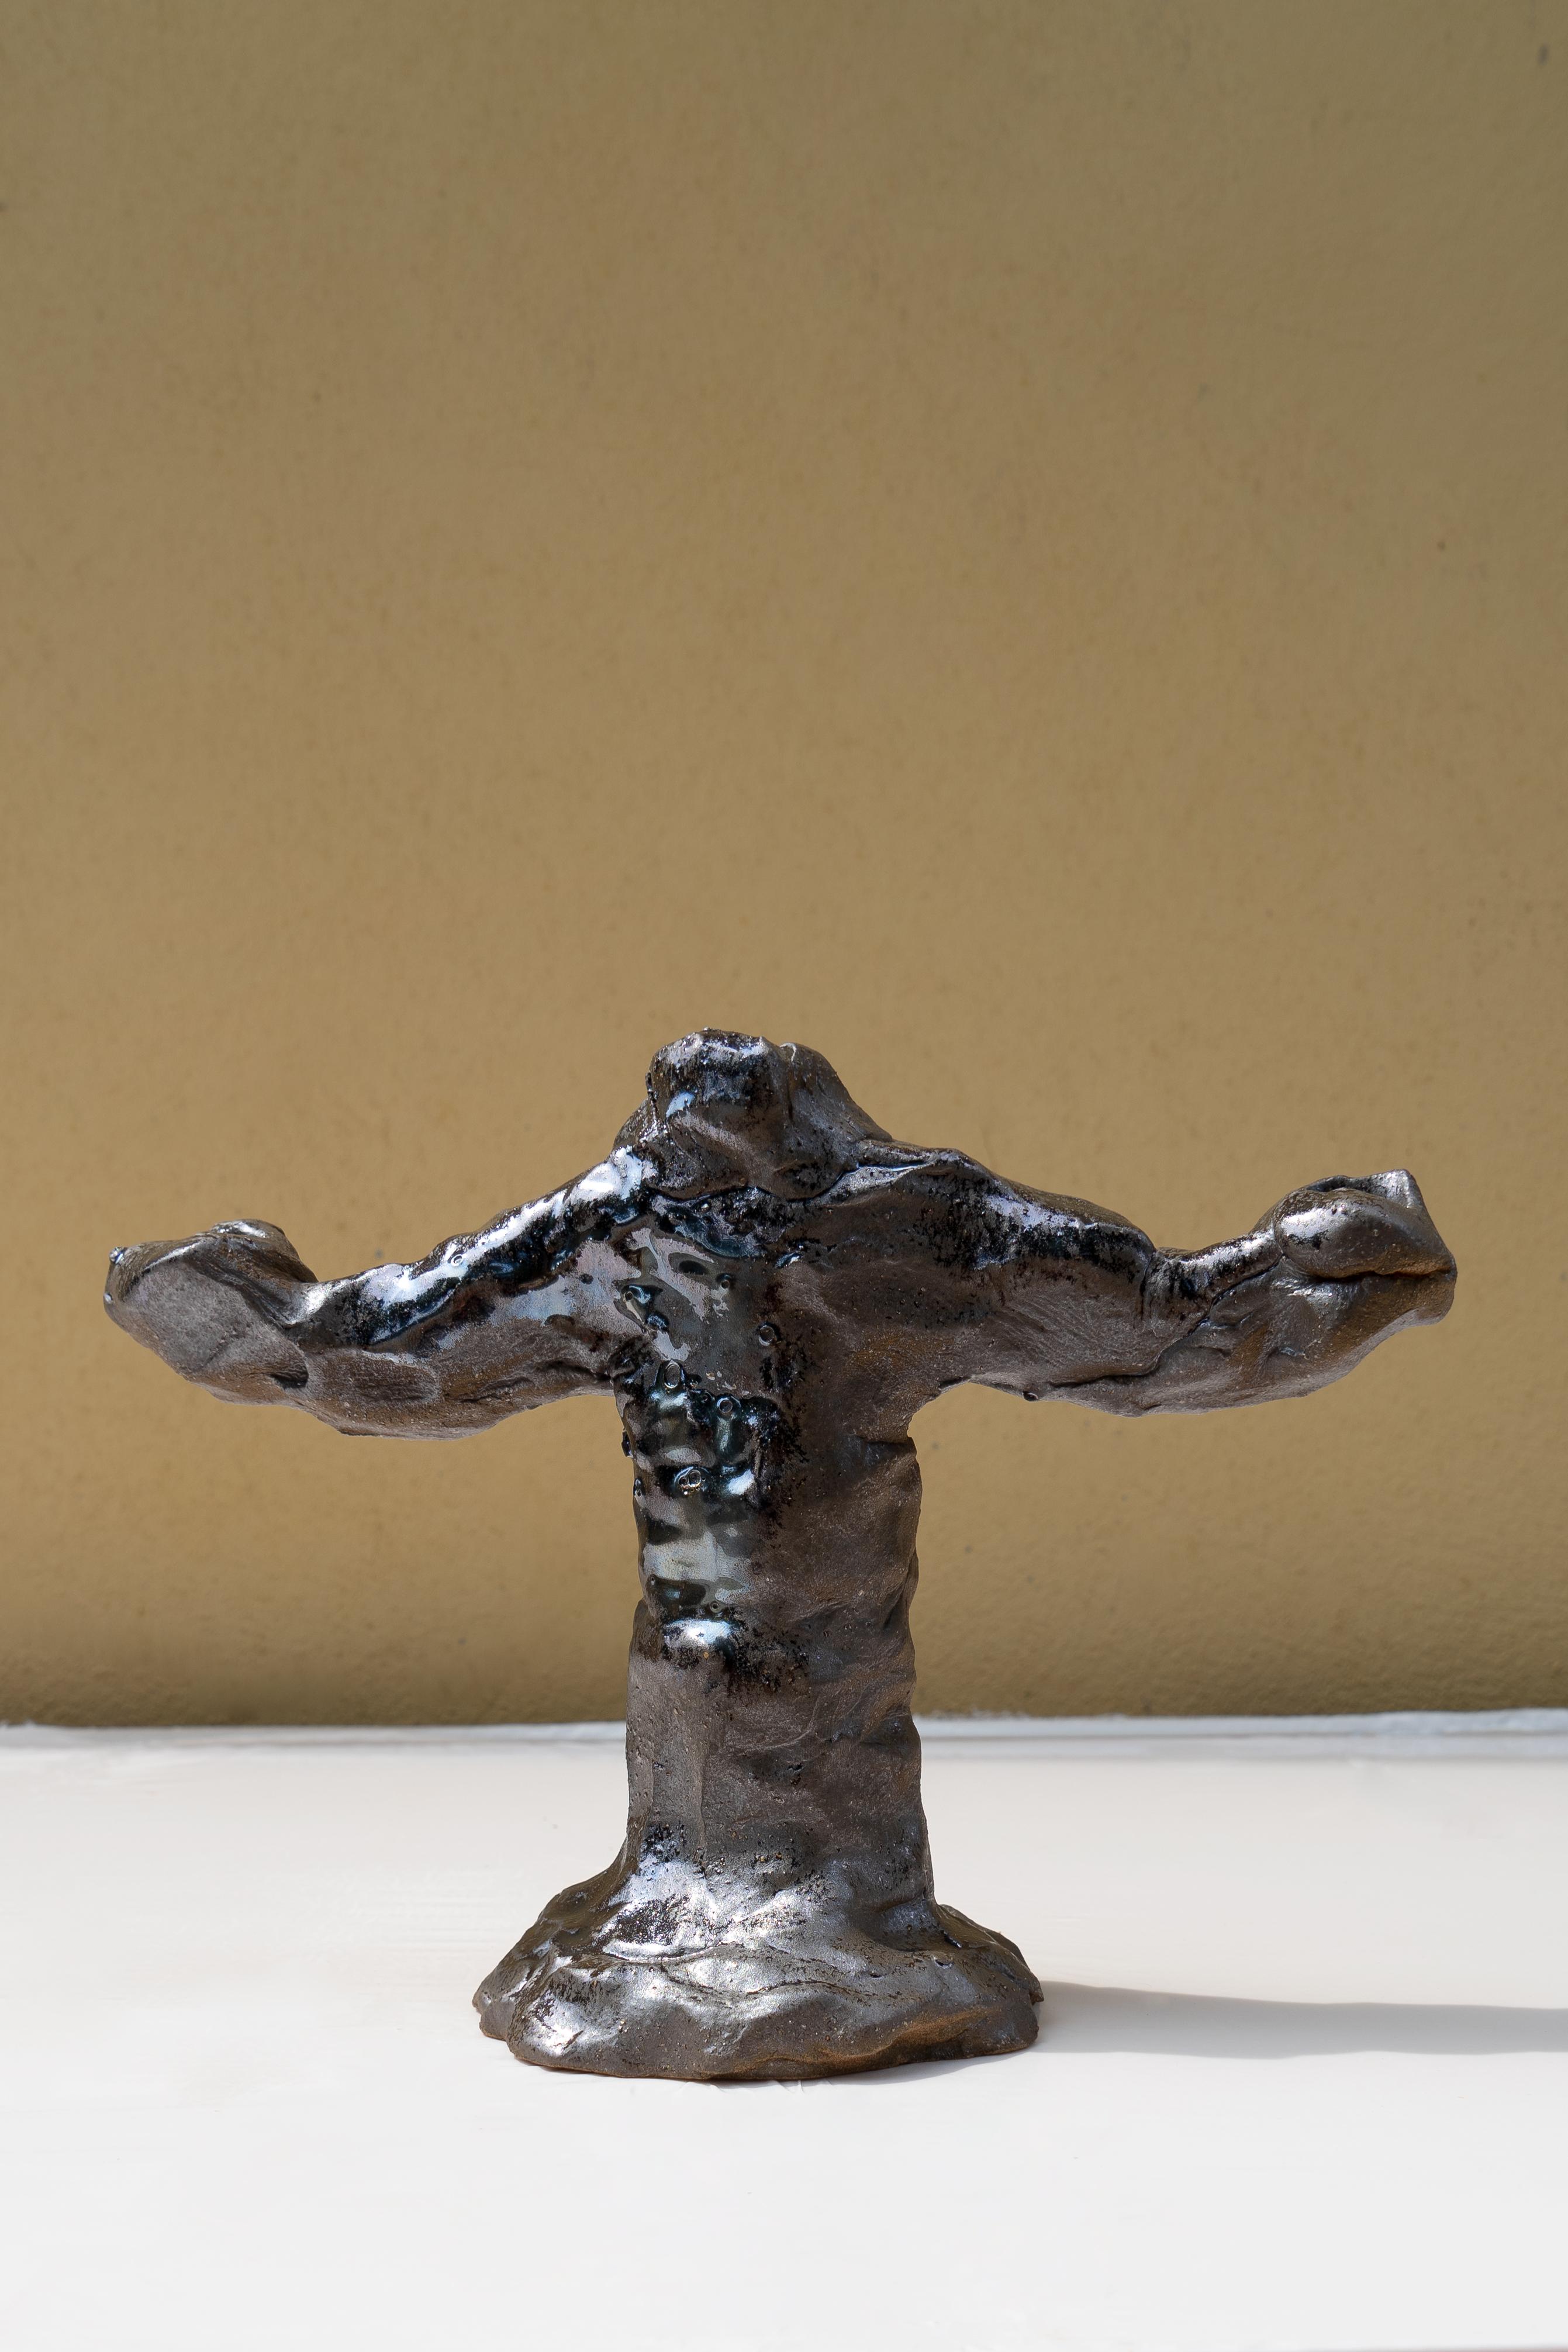 Silberner Bronze-Kreuzleuchter von Daniele Giannetti
Abmessungen: Ø 28 x H 21 cm.
MATERIALIEN: Terrakotta glasiert. 
Dieser Kandelaber kann drei Kerzen aufnehmen. Auch für vier Kerzen erhältlich.

Alle Stücke werden aus Terrakotta aus Montelupo